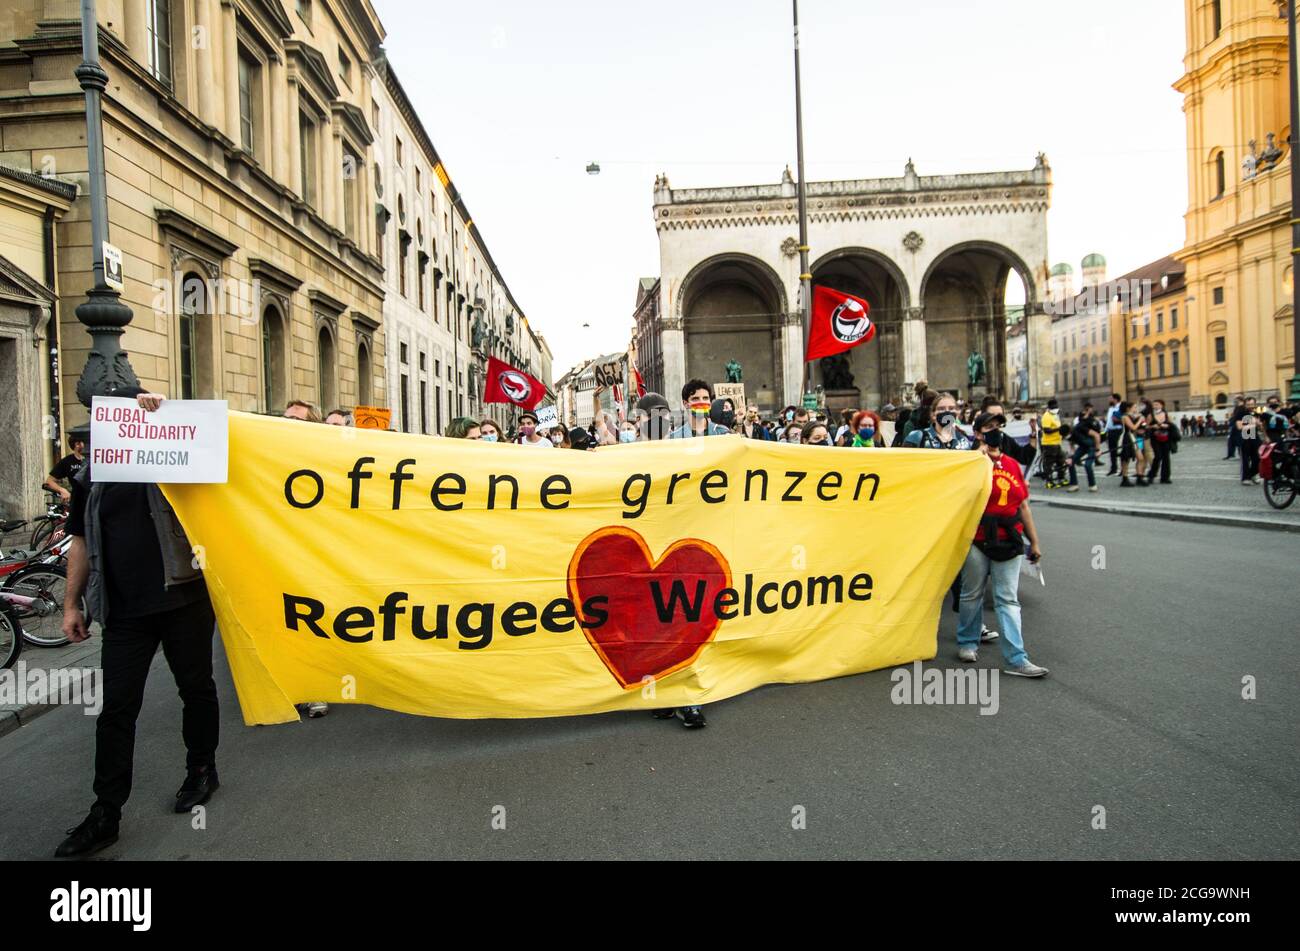 Munich, Baviera, Alemania. 9 de septiembre de 2020. Los manifestantes alemanes tienen una bandera de "fronteras abiertas.refugiados bienvenidos" delante del histórico Feldherrnhalle en Munich, Alemania. Aproximadamente 500 residentes de Munich, Alemania, se manifestaron para que los países miembros de la UE se llevaran finalmente a los migrantes y refugiados del campamento de refugiados de Moria que huyeron debido a un incendio que destruyó alrededor del 99% del mismo.después de un terrible incendio destruyó el 99% del campamento de migrantes y refugiados de Moria en Lesbos, Grecia, Se está haciendo un llamamiento a la Unión Europea y a sus estados miembros para que dejen de ignorar el desastre humanitario que está teniendo lugar Foto de stock